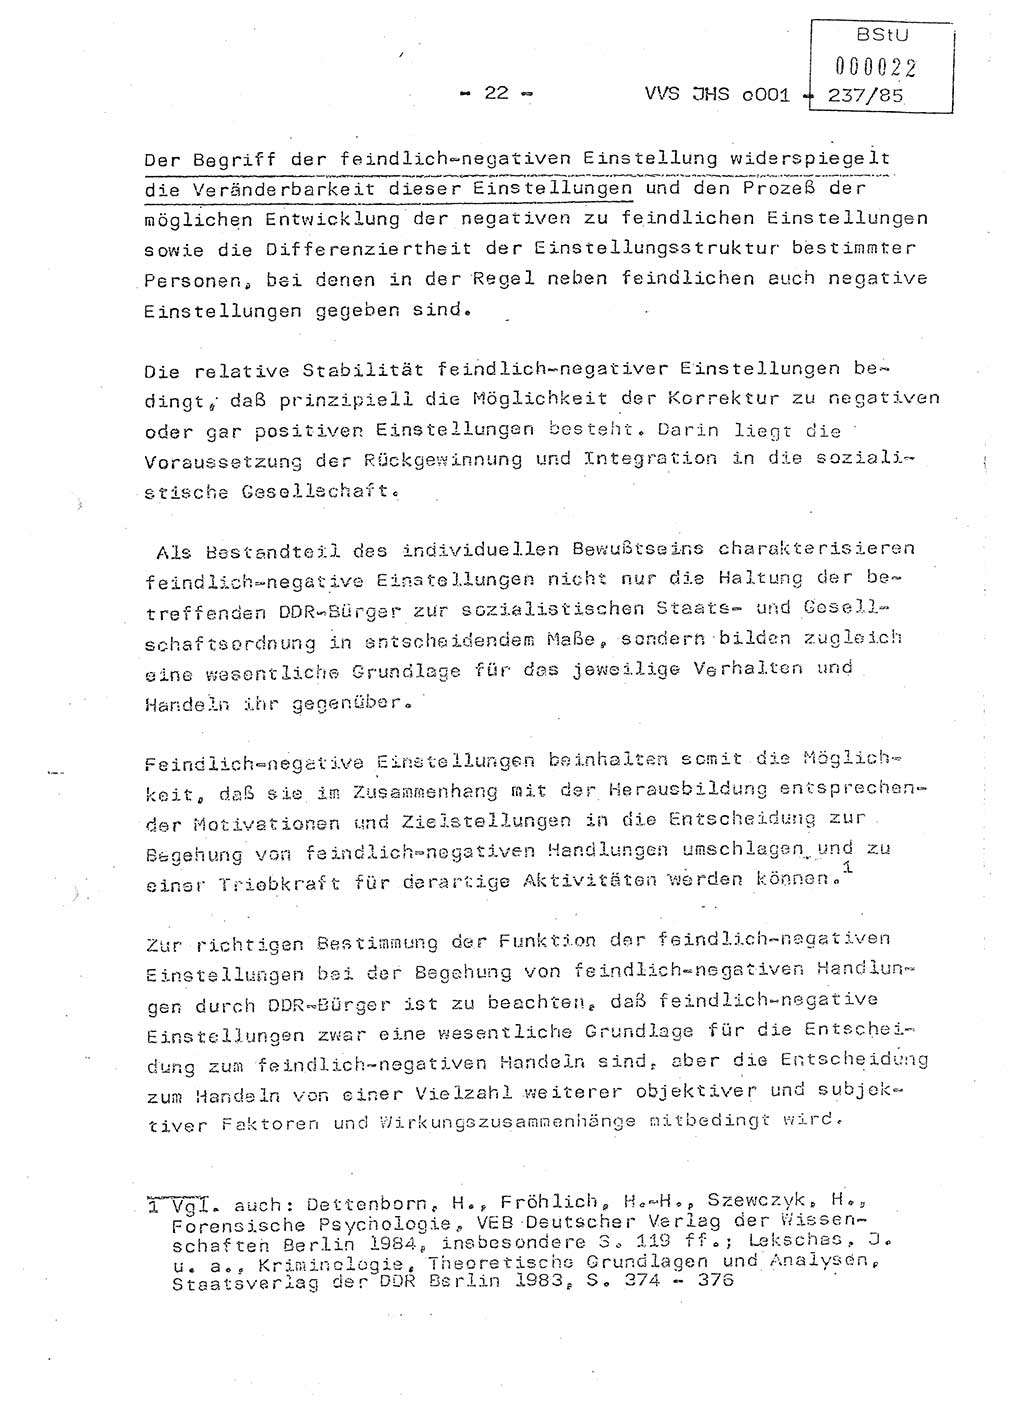 Dissertation Oberstleutnant Peter Jakulski (JHS), Oberstleutnat Christian Rudolph (HA Ⅸ), Major Horst Böttger (ZMD), Major Wolfgang Grüneberg (JHS), Major Albert Meutsch (JHS), Ministerium für Staatssicherheit (MfS) [Deutsche Demokratische Republik (DDR)], Juristische Hochschule (JHS), Vertrauliche Verschlußsache (VVS) o001-237/85, Potsdam 1985, Seite 22 (Diss. MfS DDR JHS VVS o001-237/85 1985, S. 22)